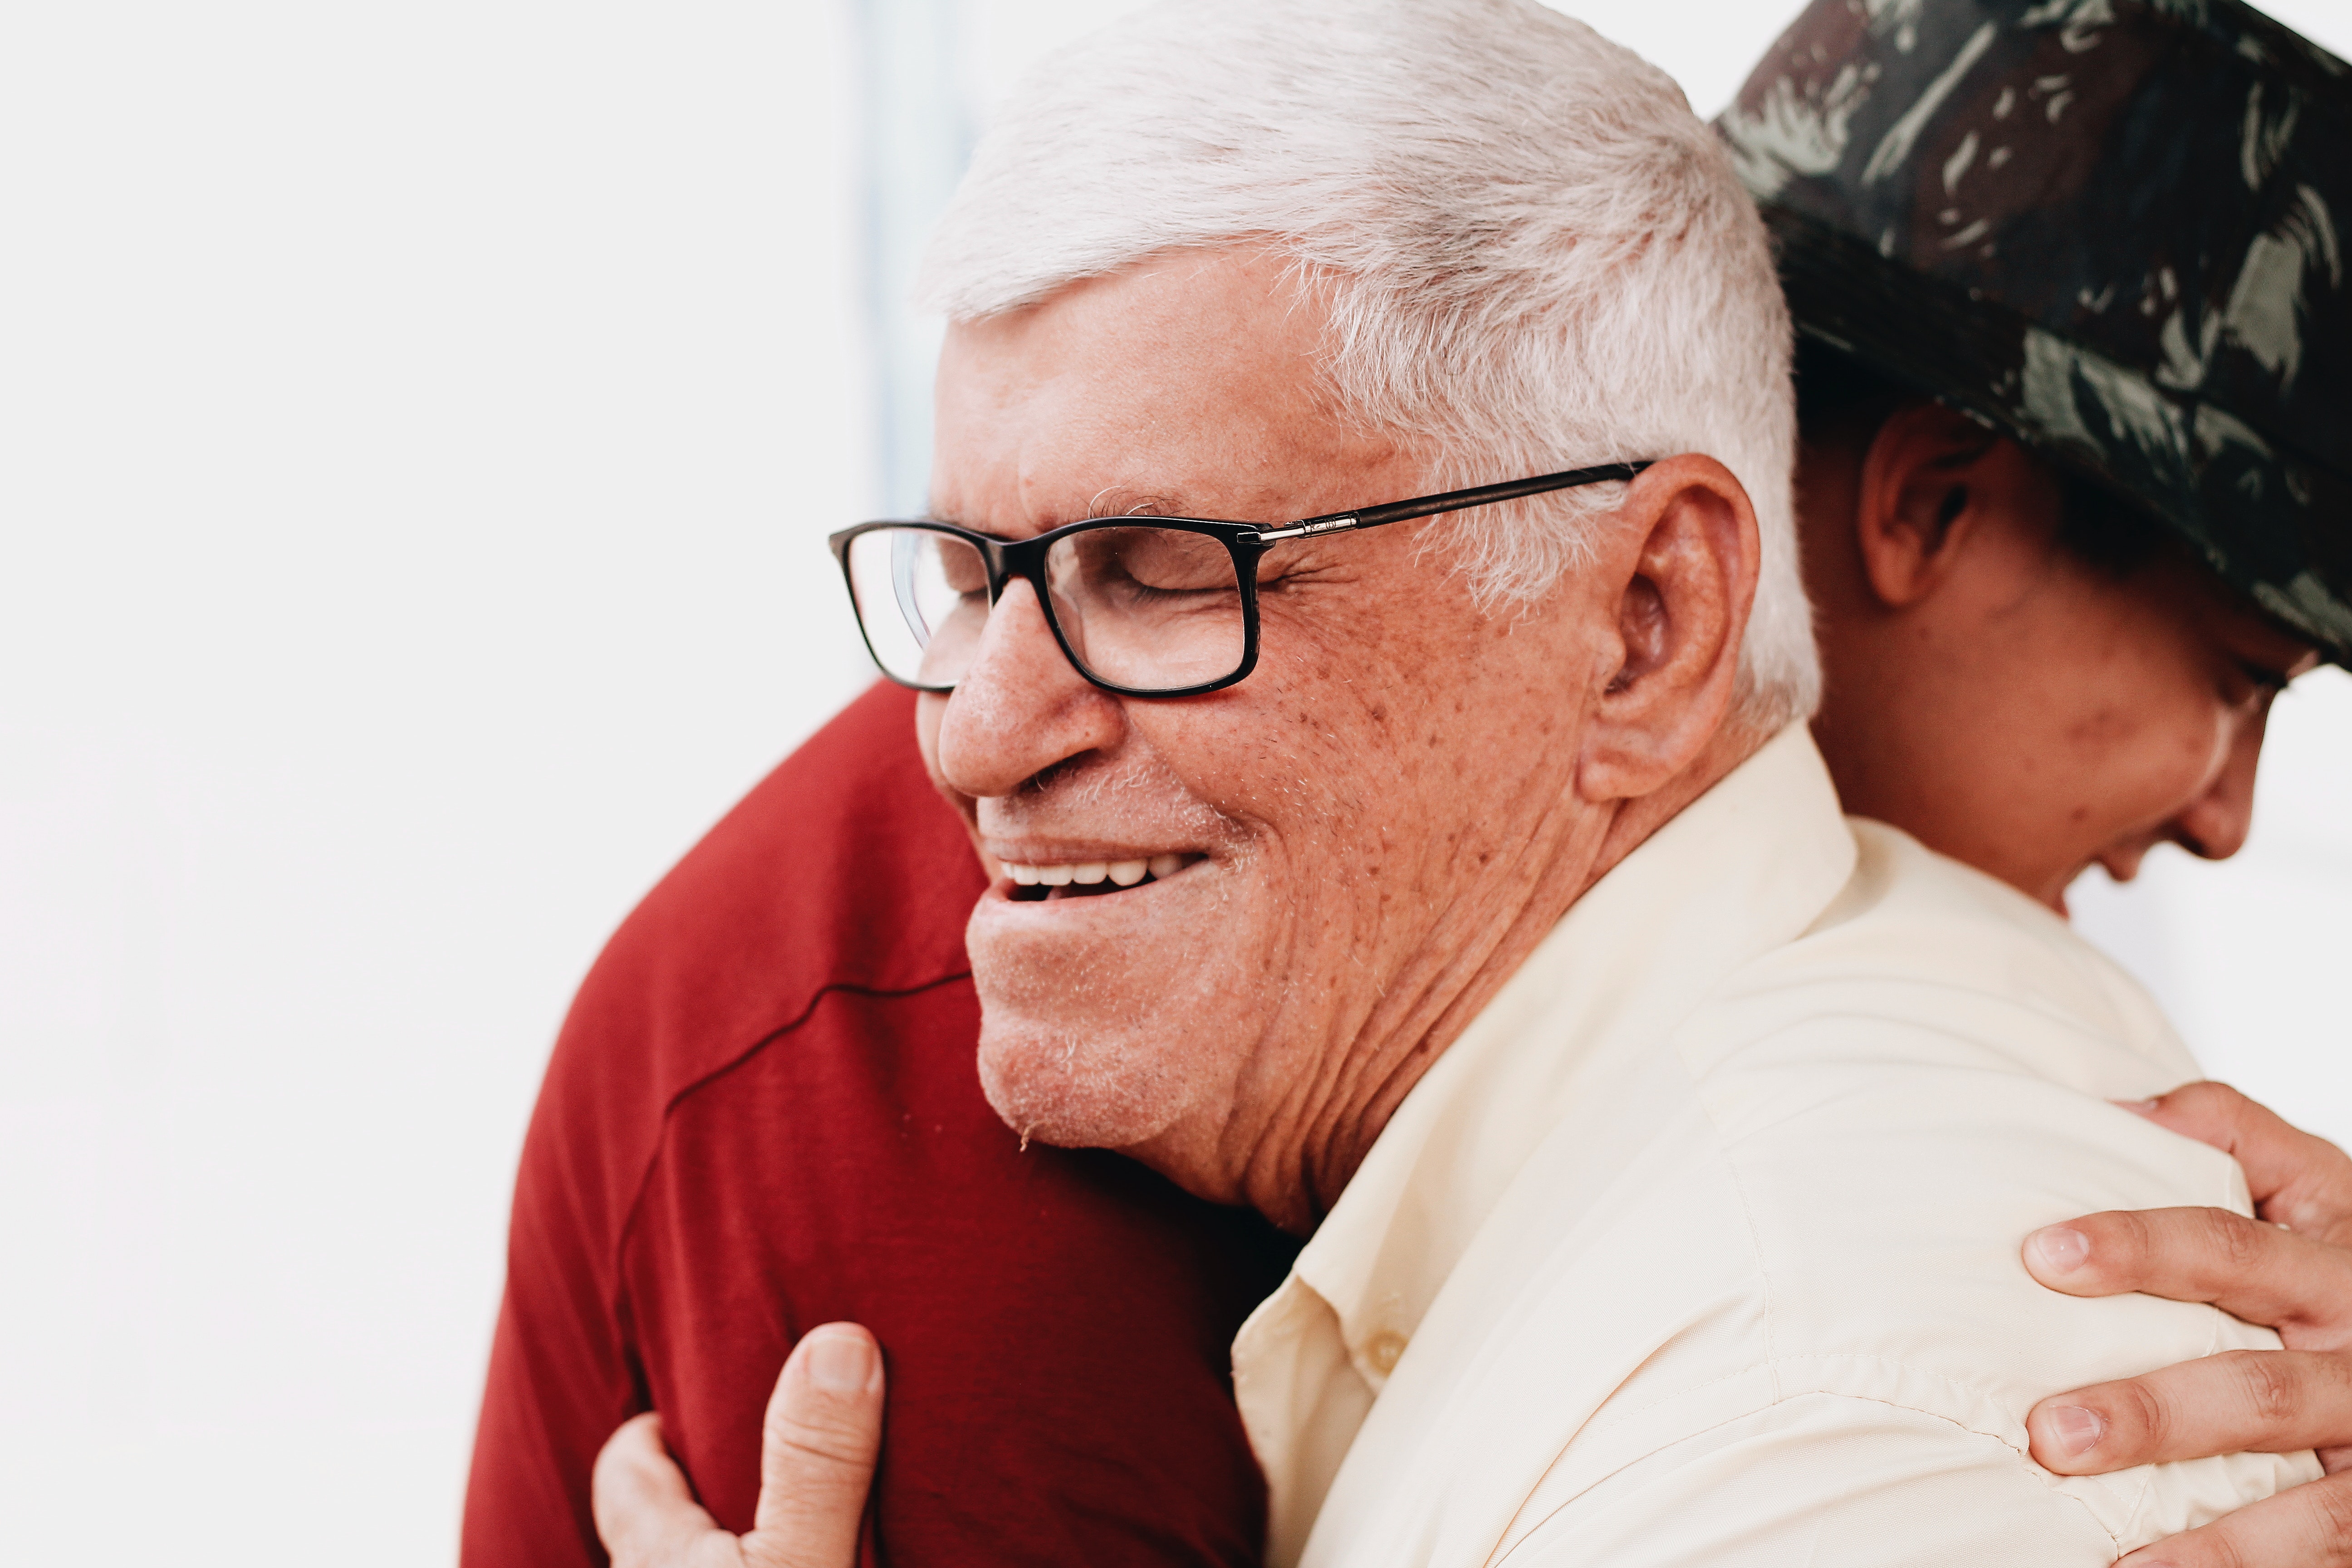 Care worker hugs elderly patient